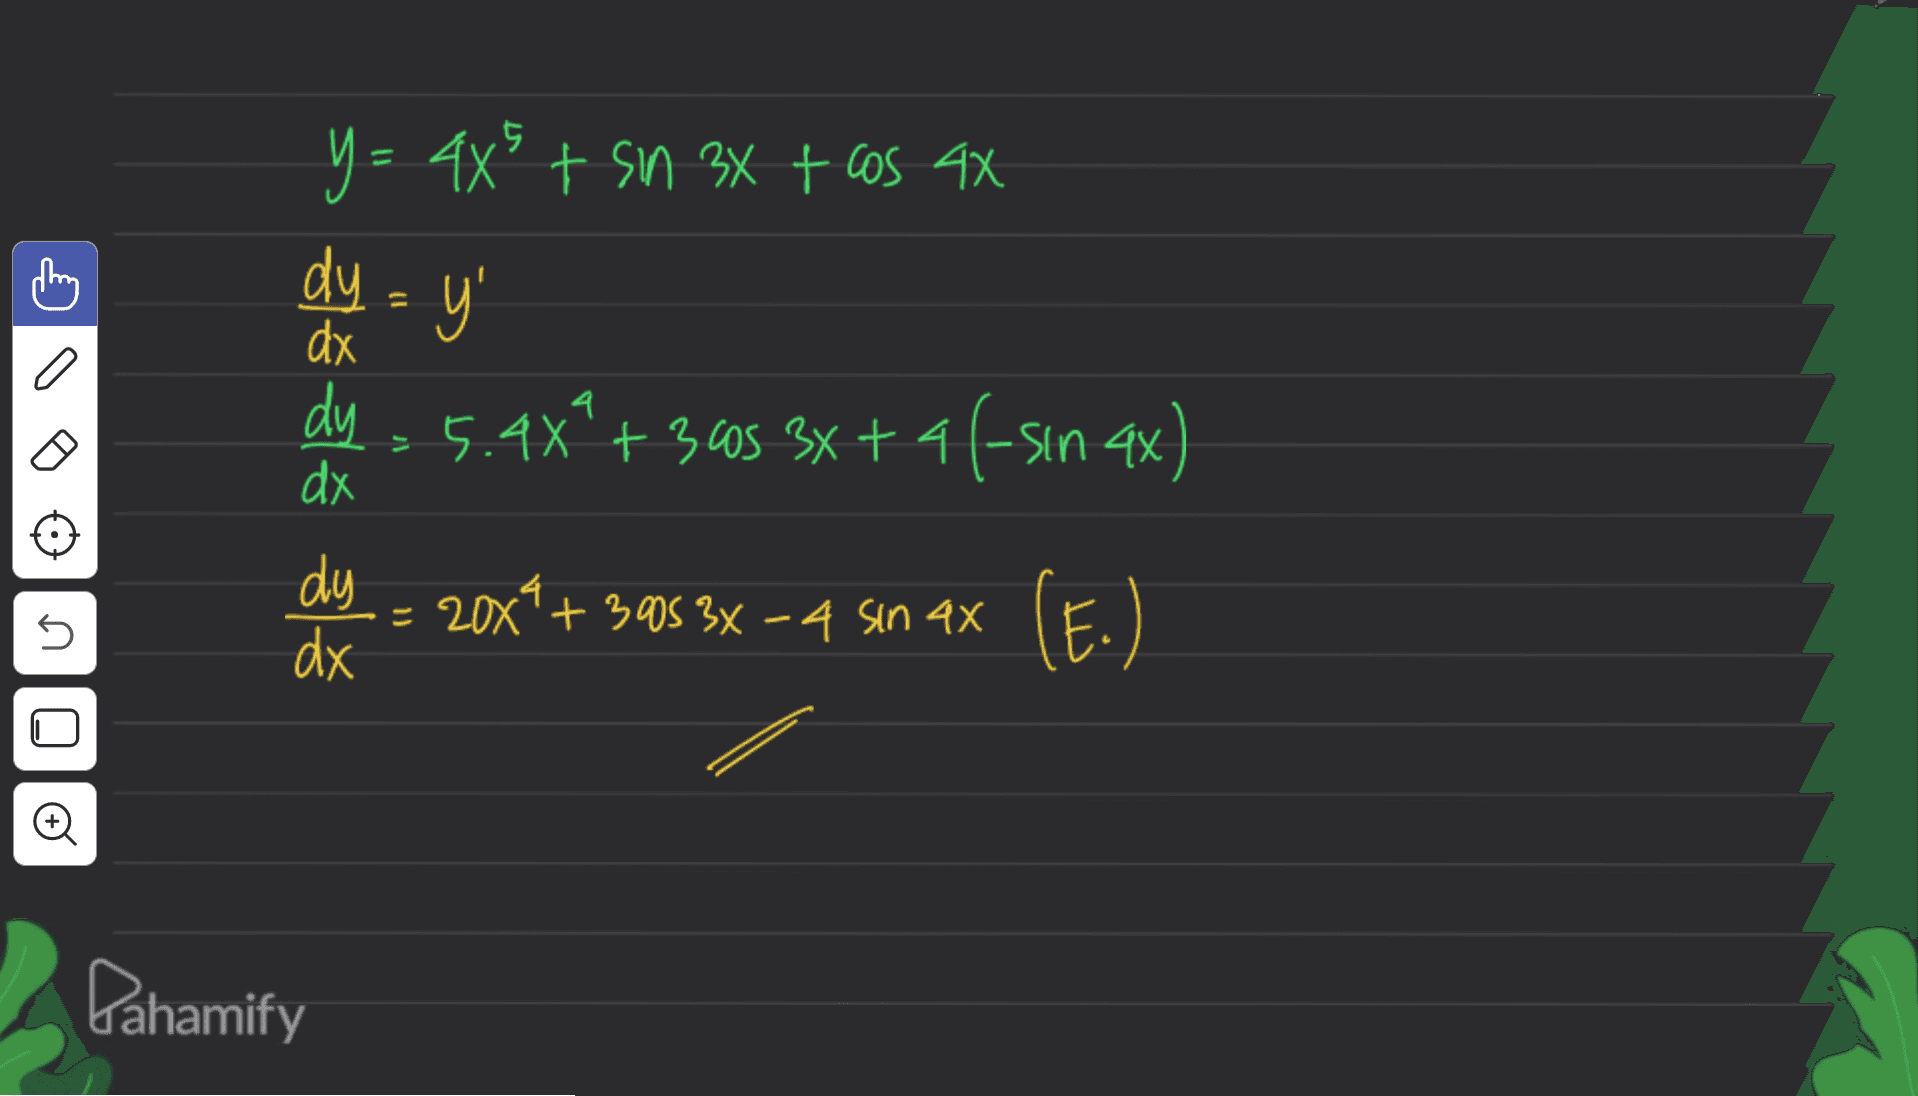 y = =+ SM x + 6S X dy = y' dx dy dx 4 也 从业从山从 5.4x +355 x + 4(Sin x) dy dx = 2x'+50 x一40 X 20x1 (E) E. 010 (4) Pahamify 